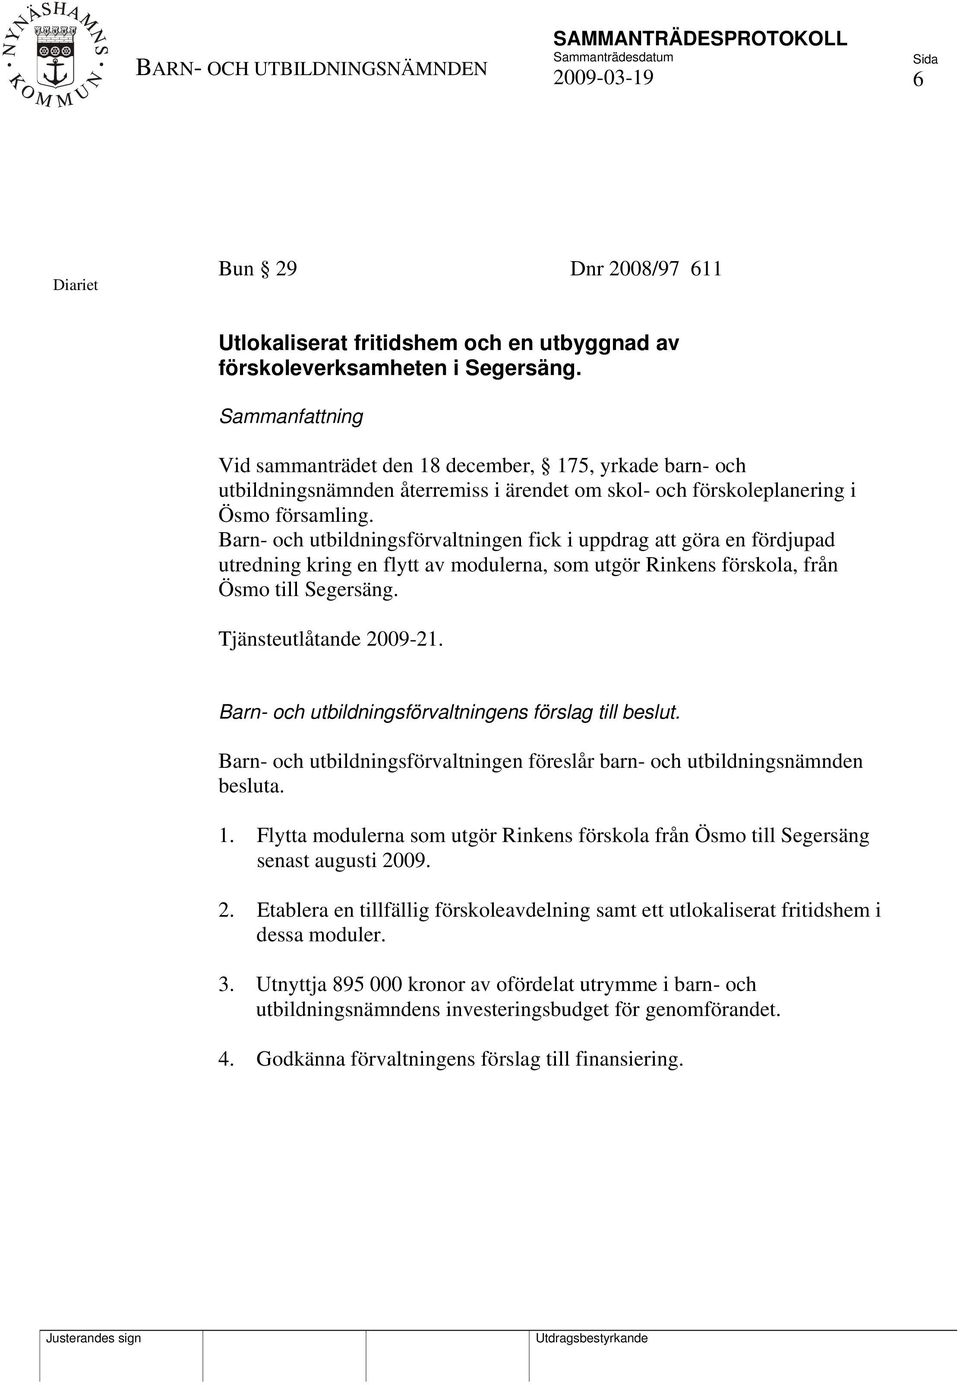 Barn- och utbildningsförvaltningen fick i uppdrag att göra en fördjupad utredning kring en flytt av modulerna, som utgör Rinkens förskola, från Ösmo till Segersäng. Tjänsteutlåtande 2009-21.